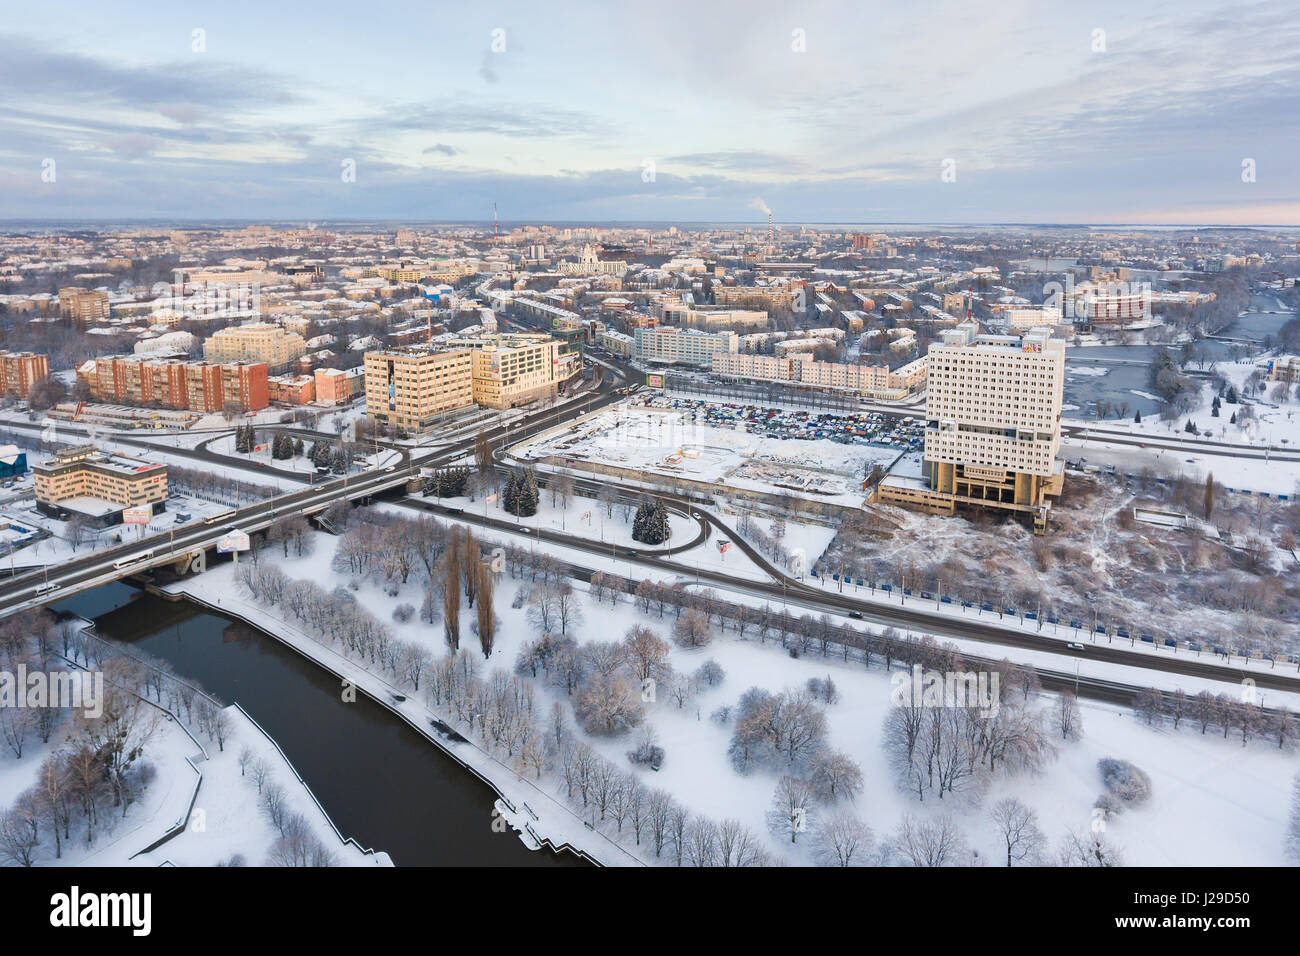 Kaliningrad, Russland - 4. Dezember 2016: Das architektonische Wahrzeichen des Kaliningrader Gebiets von oben im kalten winter Stockfoto